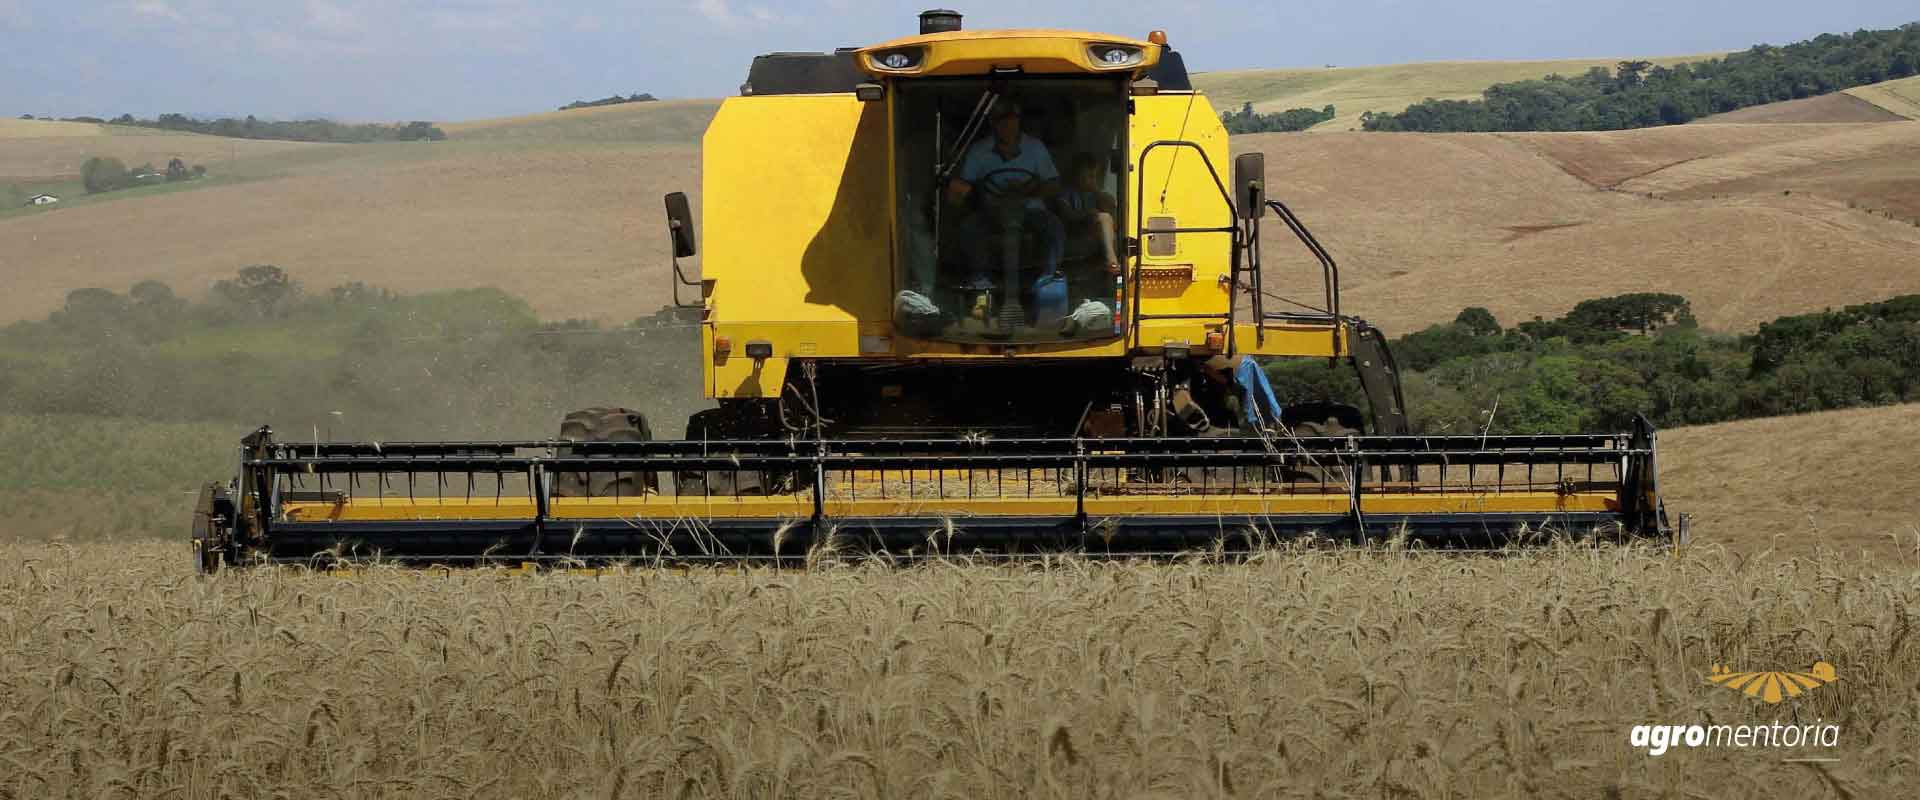 Concorrência com milho pode limitar plantio de trigo no Paraná, diz Deral